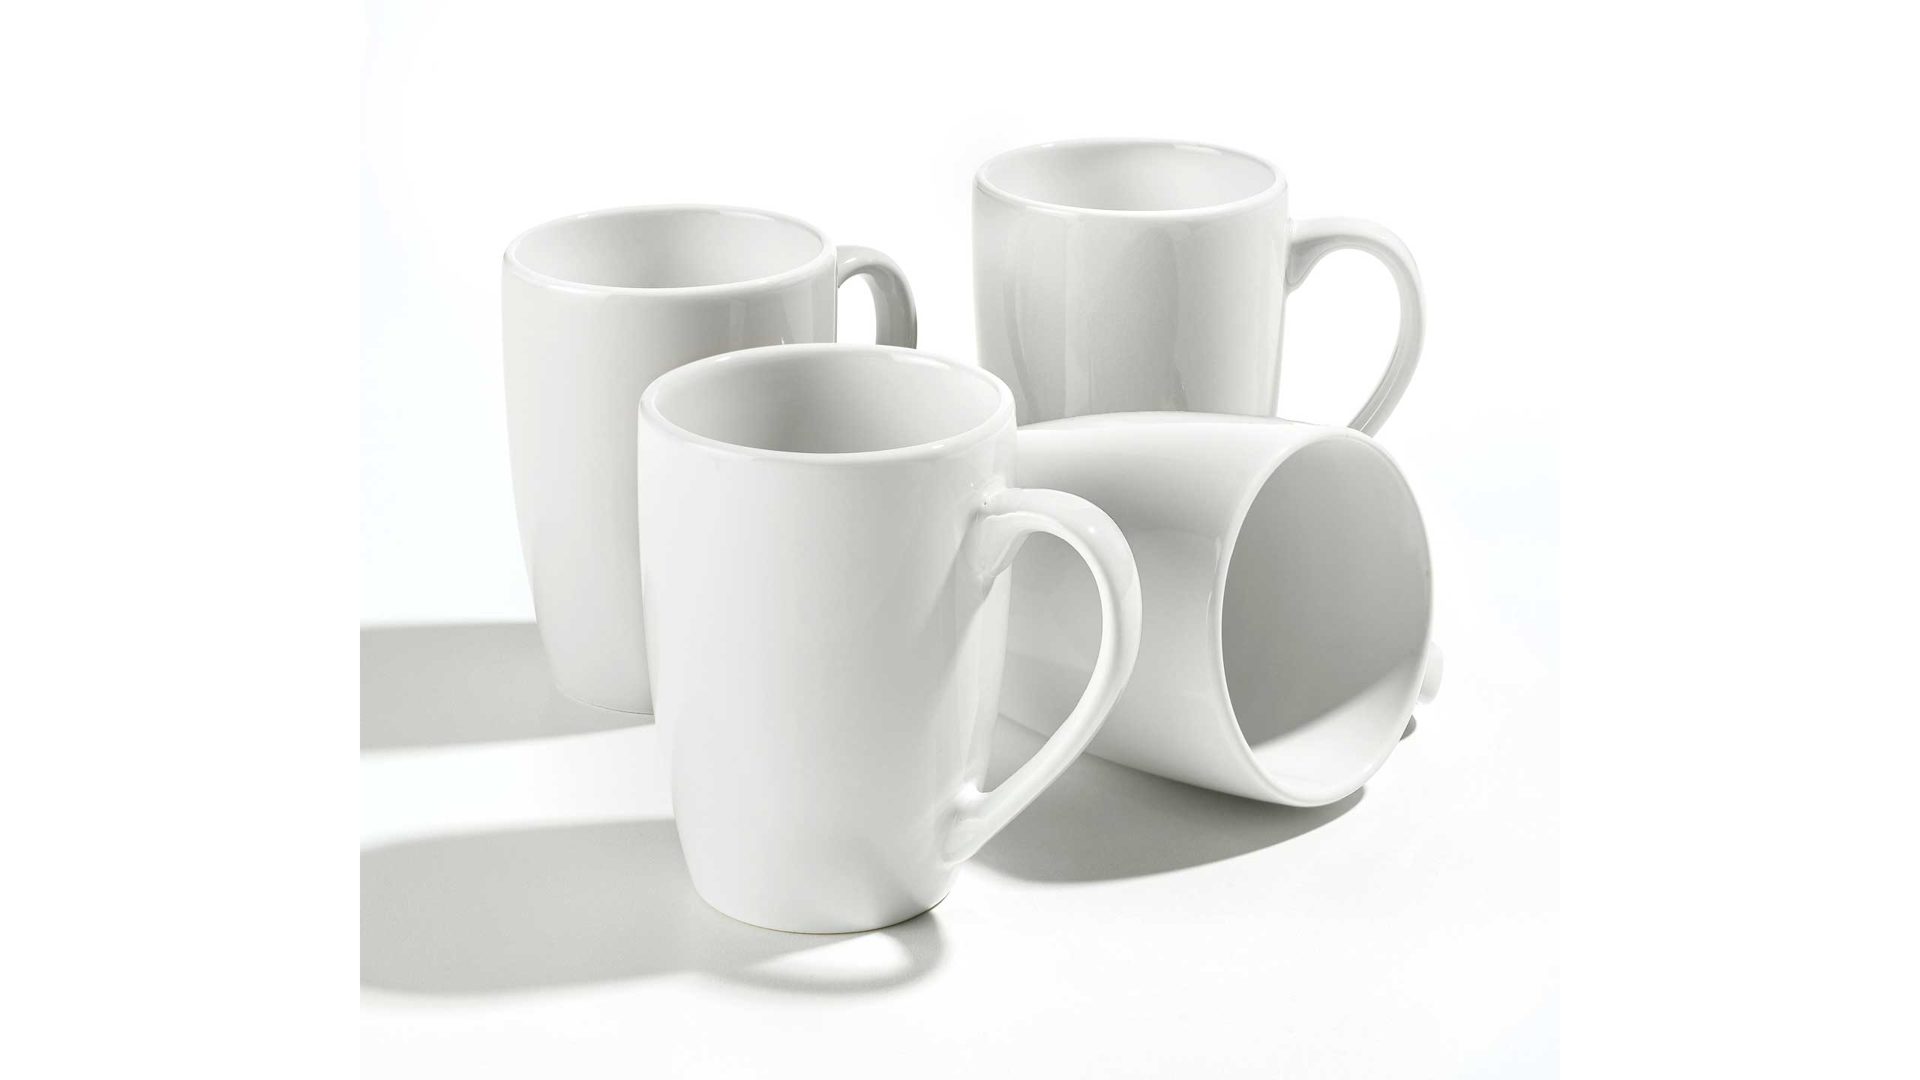 Kaffeebecher Creatable aus Keramik in Weiß CREATABLE Henkelbecher Kaffeebecher weißes Steinzeug - 350 ml Fassungsvermögen